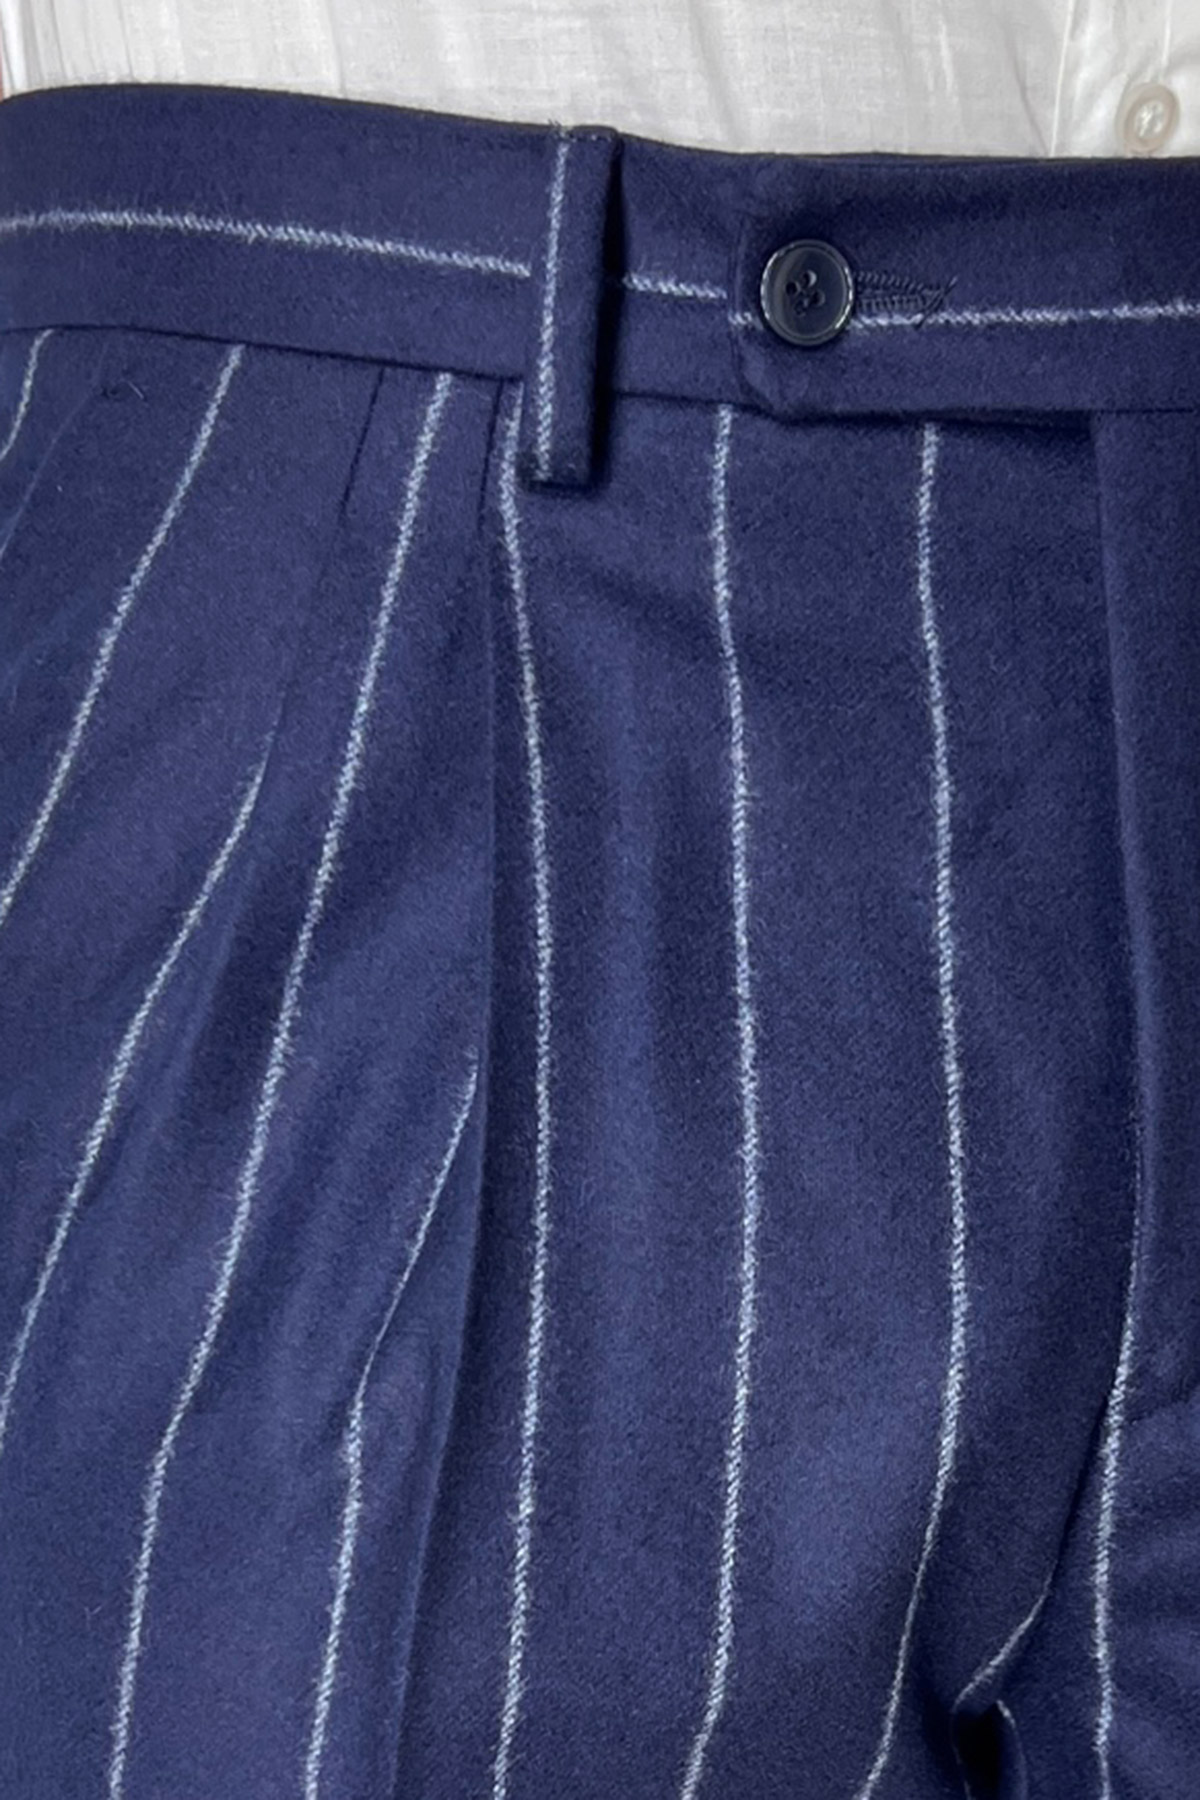 Pantalone uomo blu gessato grigio vita alta tasca america in lana flanella con doppia pinces Vitale Barberis Canonico